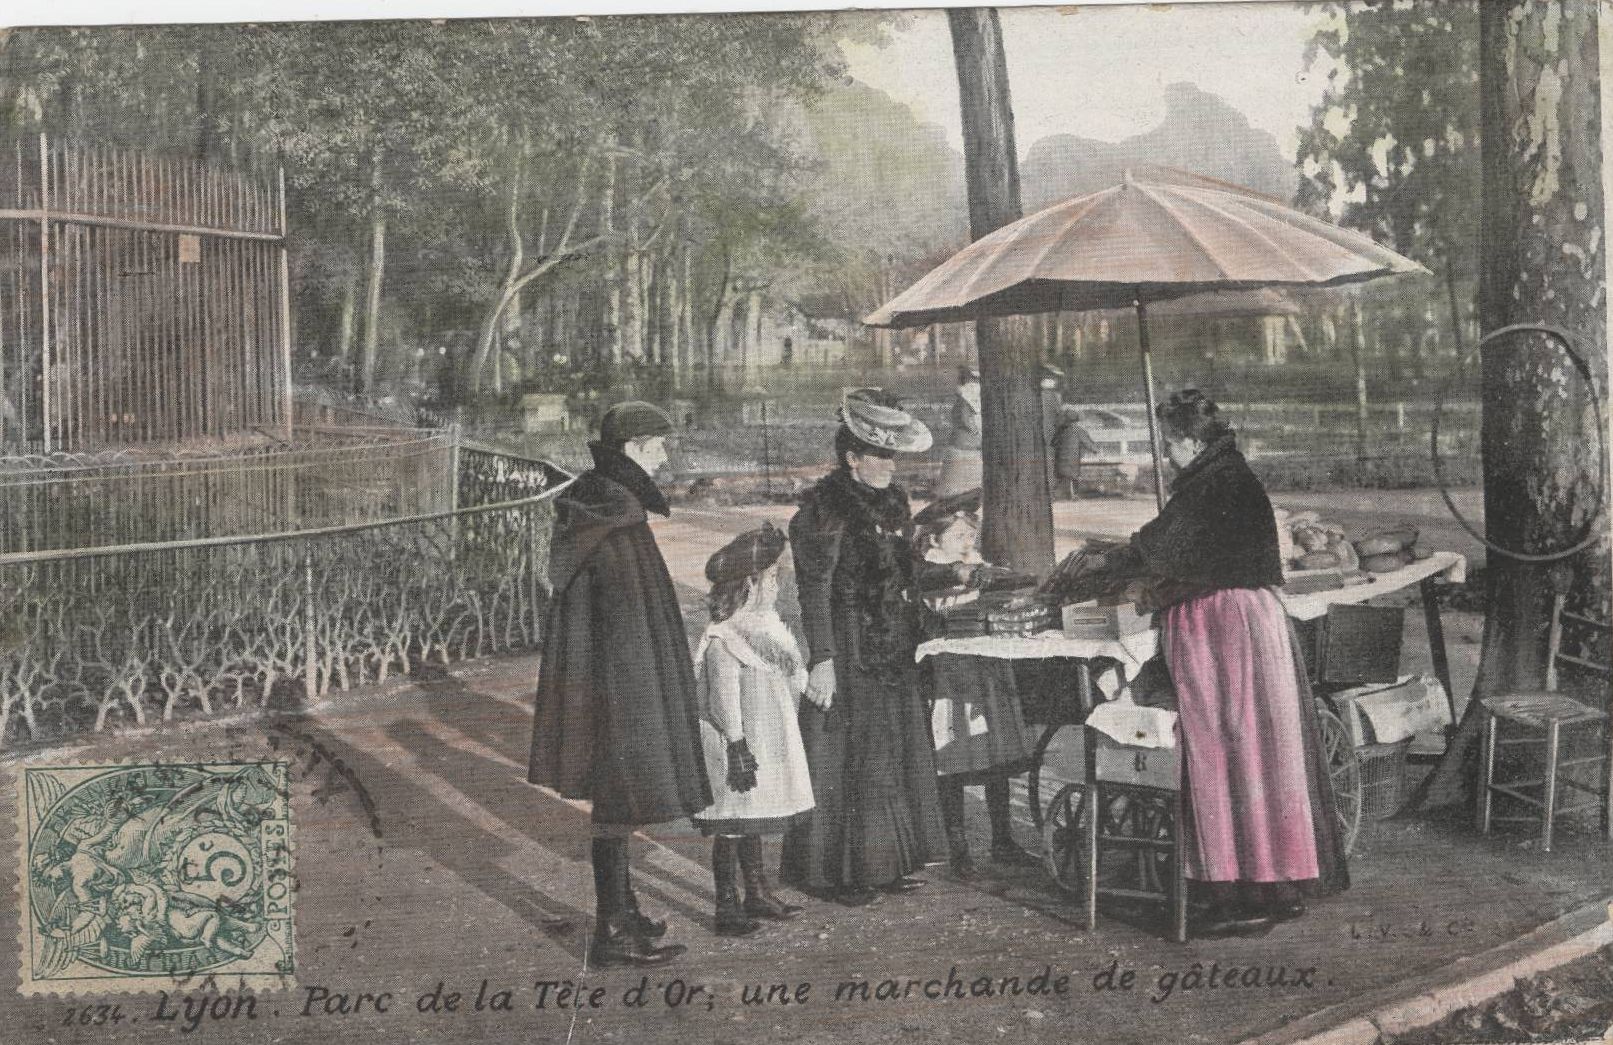 Lyon - Parc de la Tête d'Or, une marchande de gâteaux : carte postale couleur (vers 1910, cote : 4FI/718)